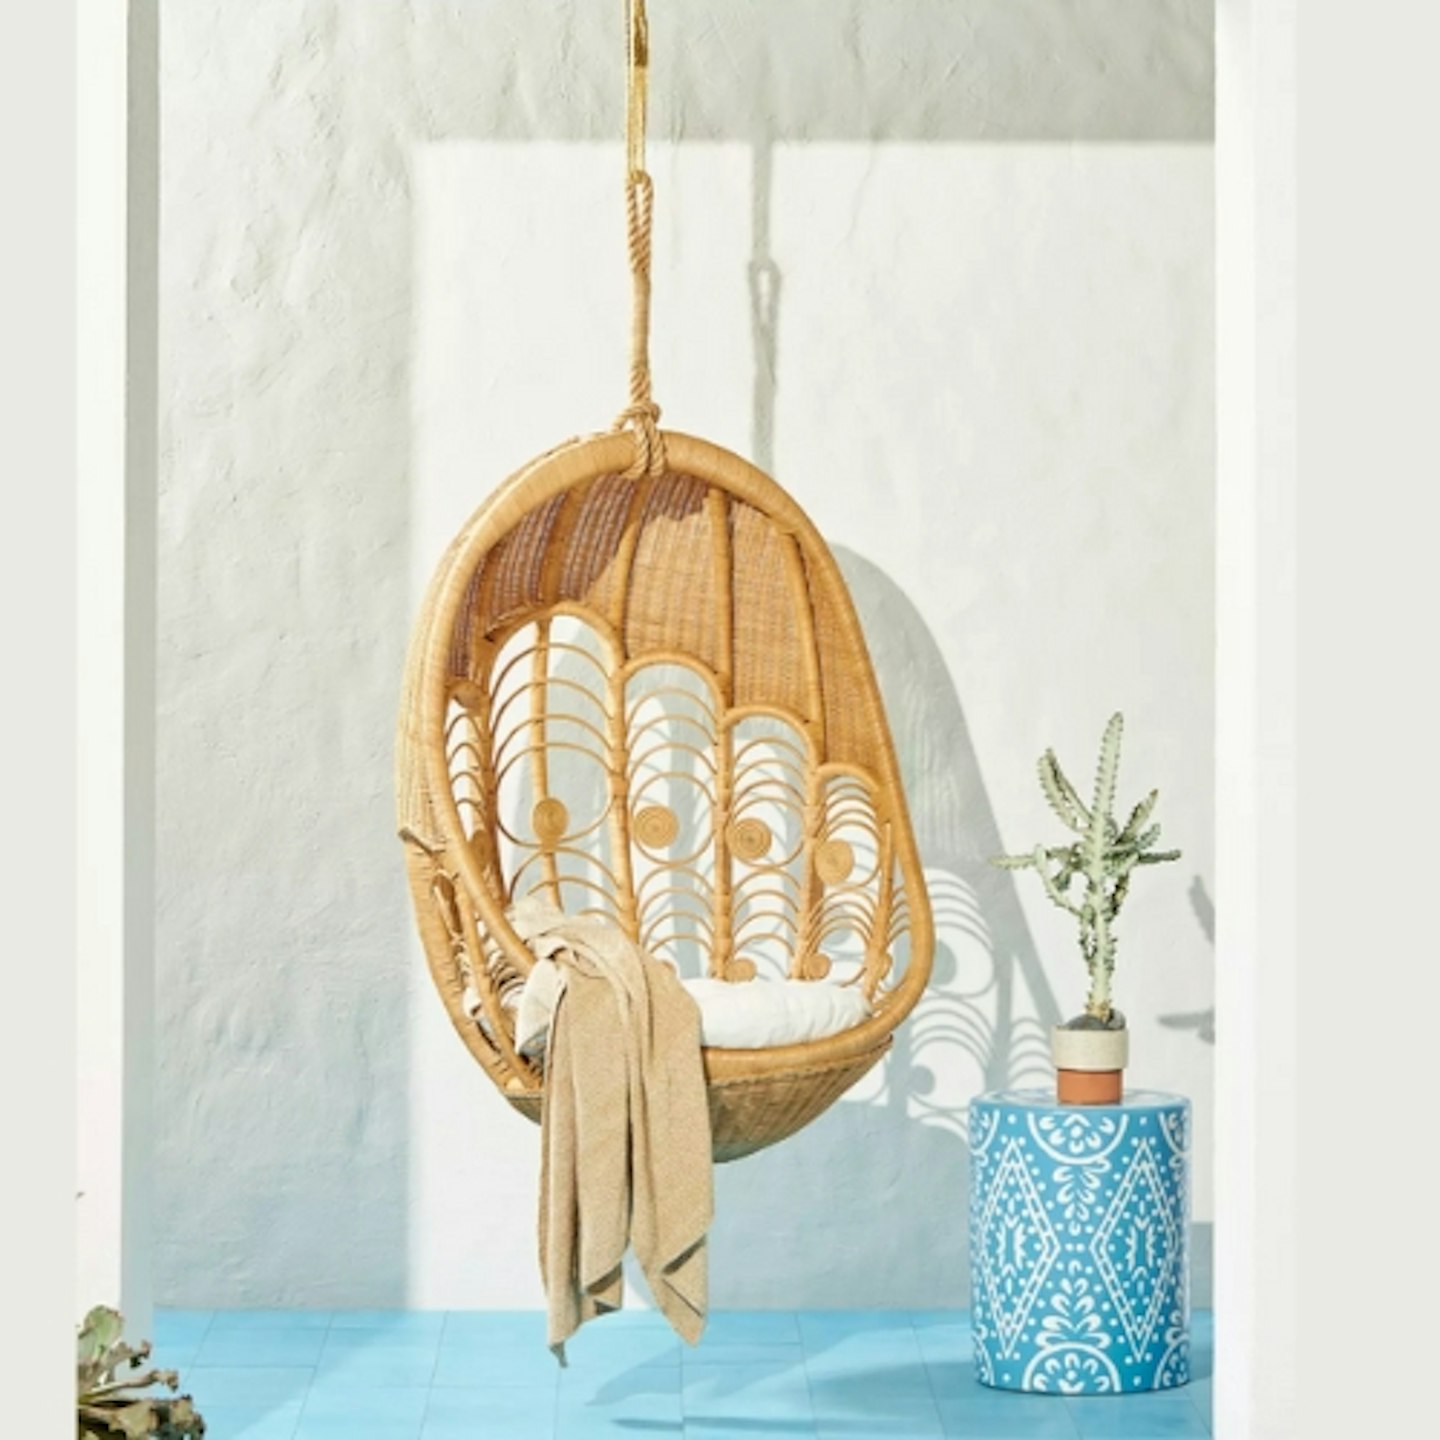 Aldi Double Hanging Egg Chair Peacock Indoor/Outdoor Hanging Chair